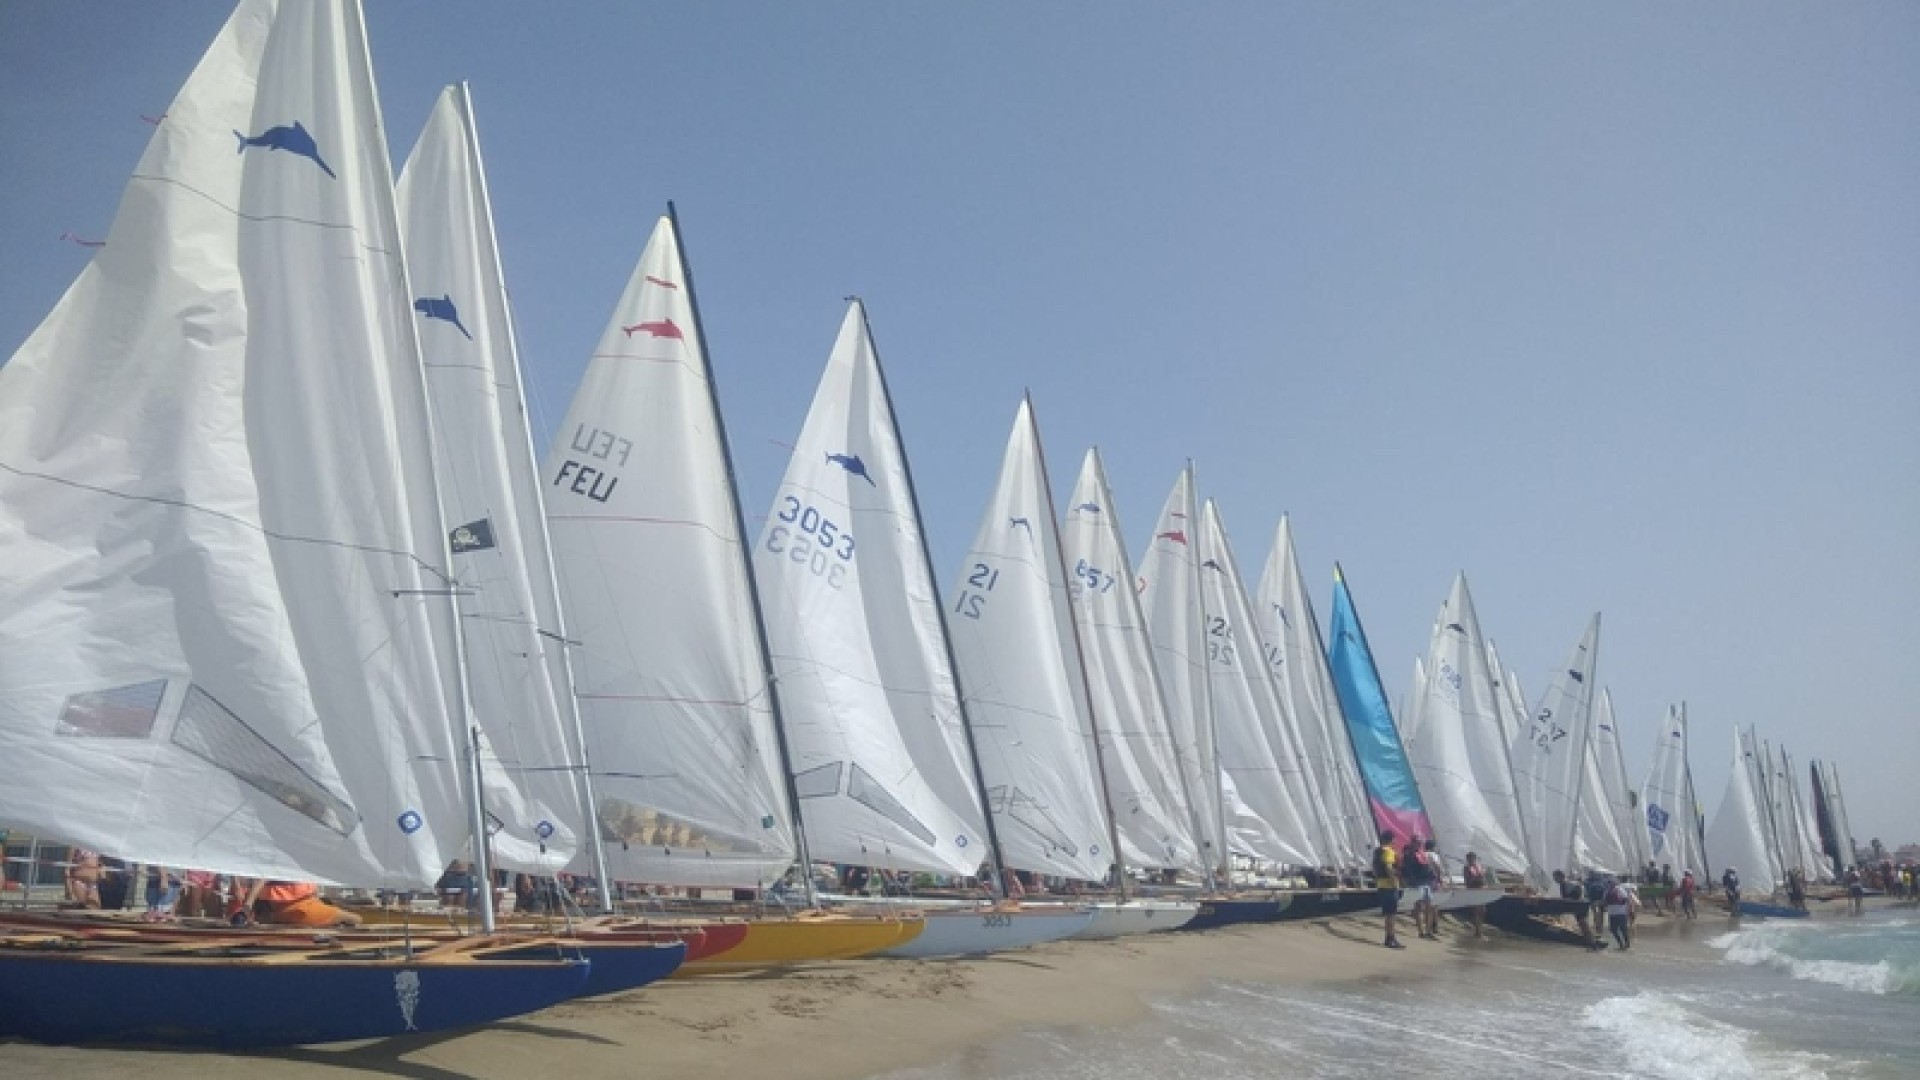 210 boats confirmed for the Pati Catala De Vela regatta